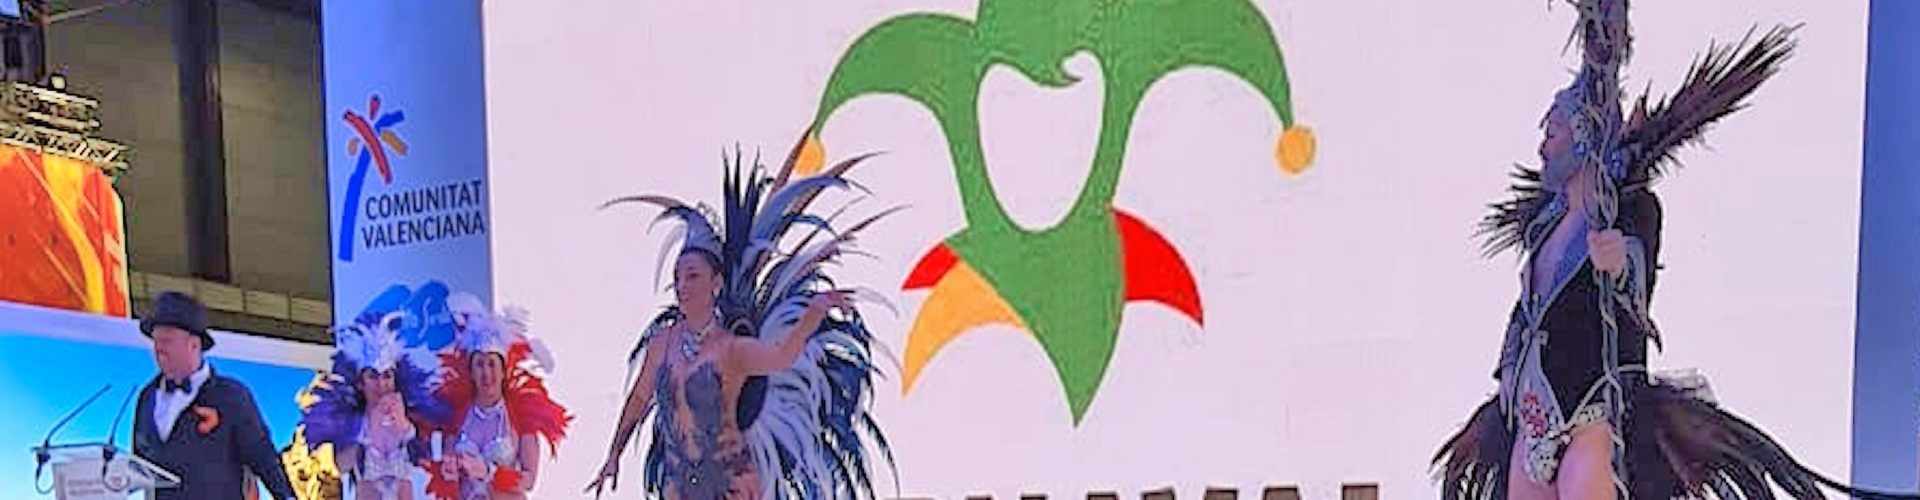 Vídeos i fotos: El Carnaval de Vinaròs, a FITUR